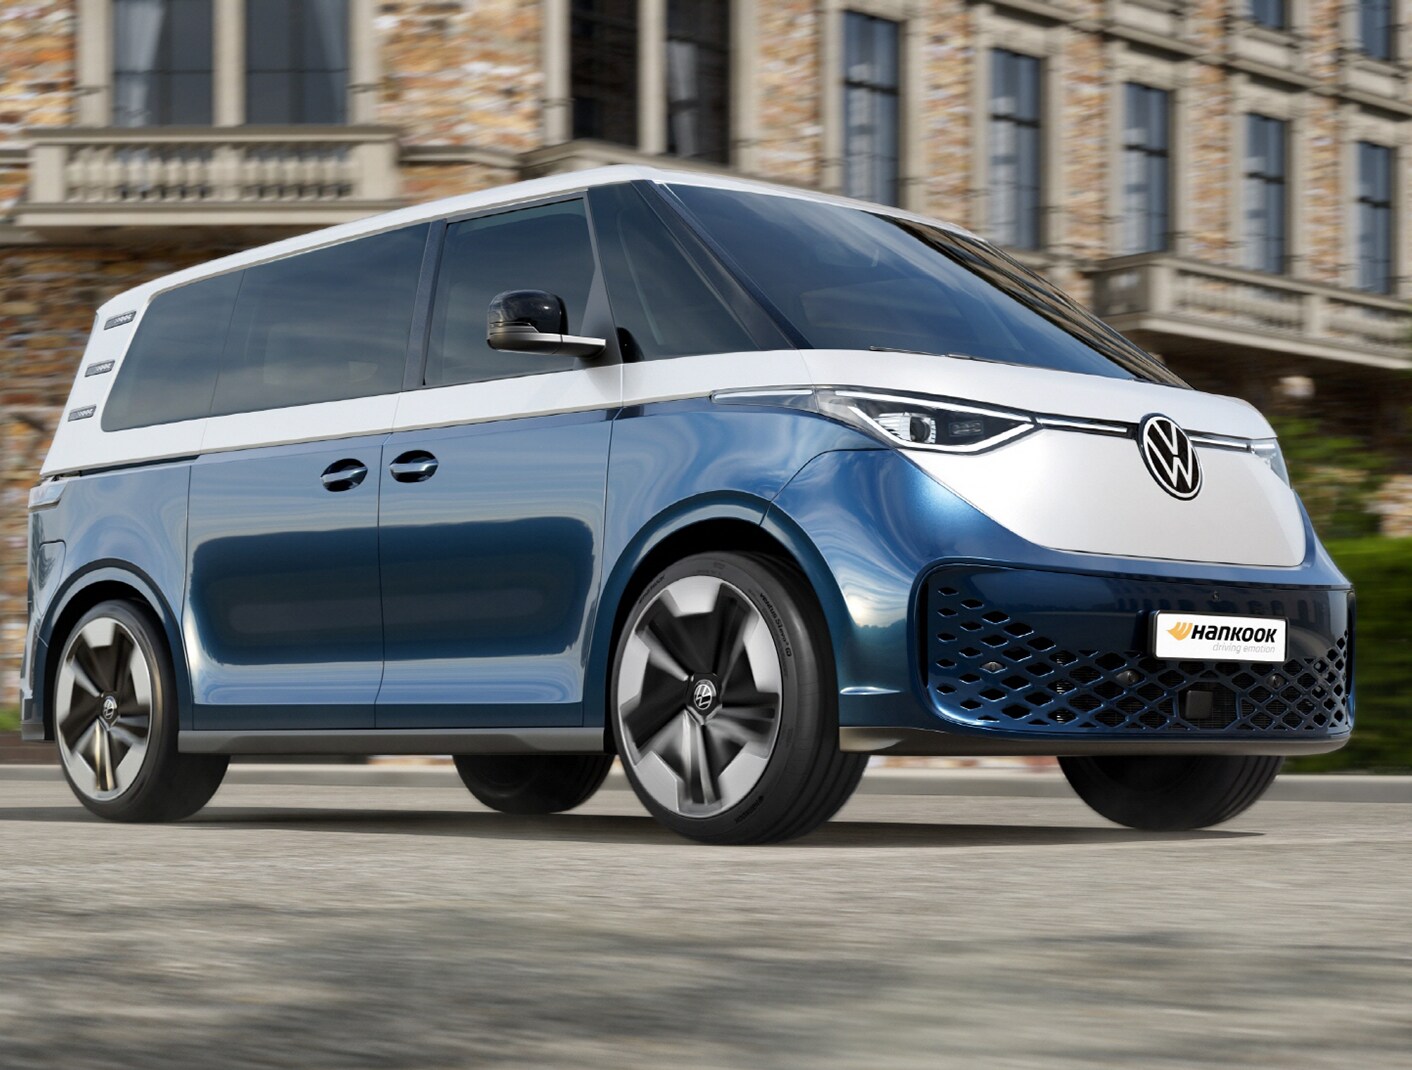 Hankook Tire melengkapi mobil listrik “Volkswagen ID. Buzz” dengan seri Ventus S1 evo 3 ev yang hadir dengan peningkatan rolling resistance